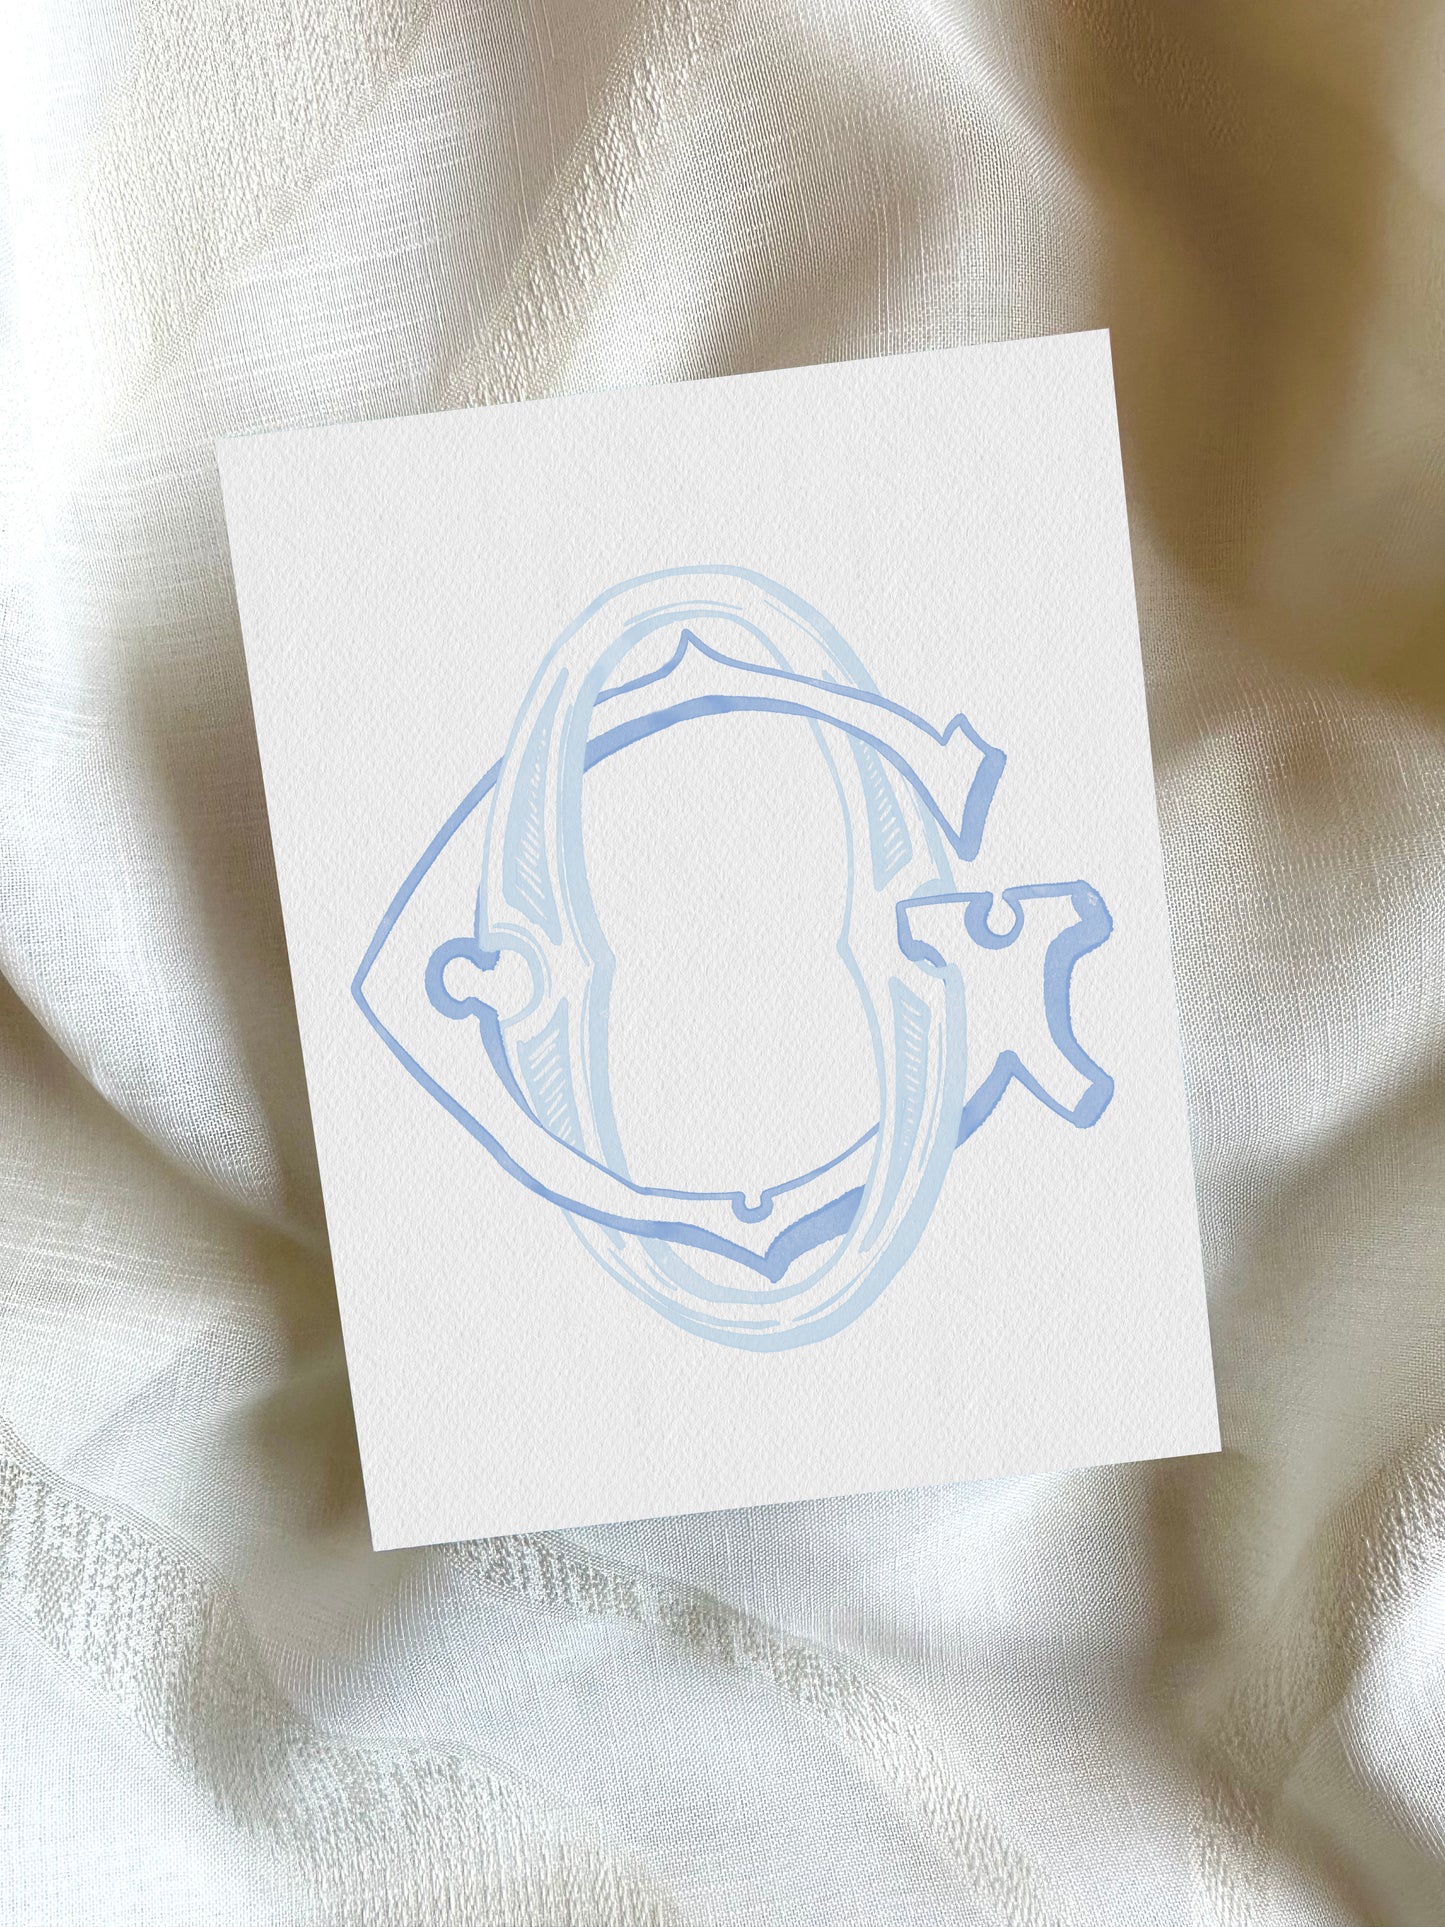 2 Letter Monogram with Letters GO OG | Digital Download - Wedding Monogram SVG, Personal Logo, Wedding Logo for Wedding Invitations The Wedding Crest Lab